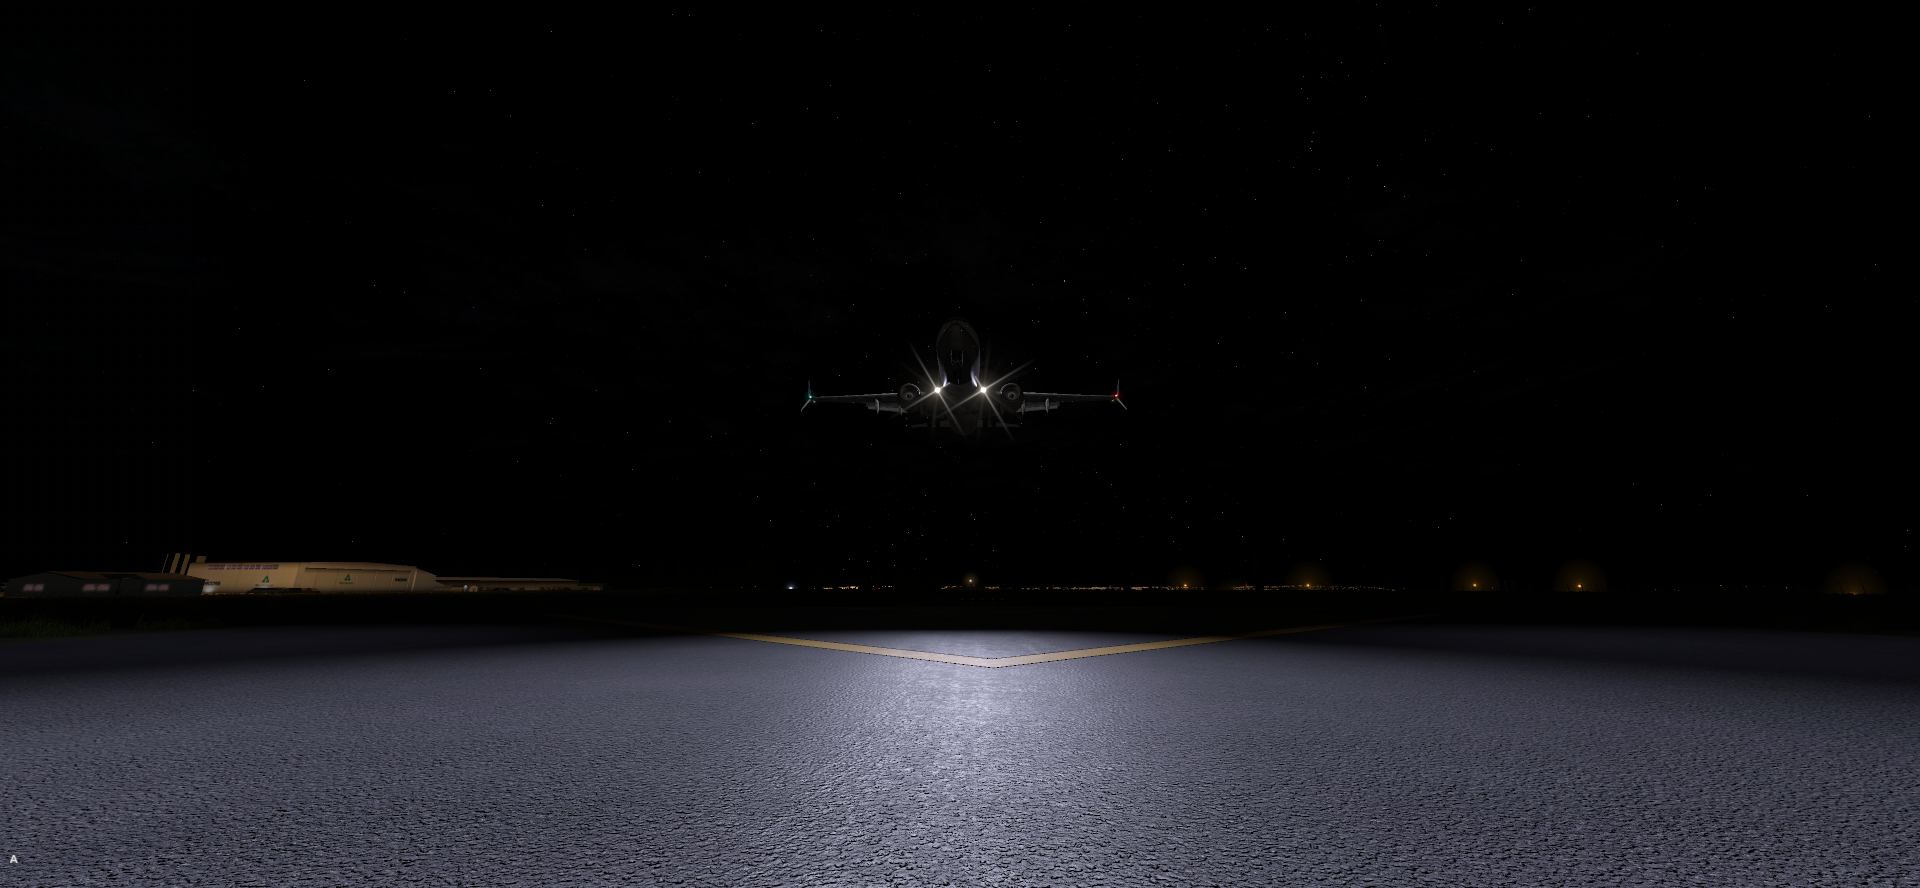 深夜降落—塔科马国际机场-122 